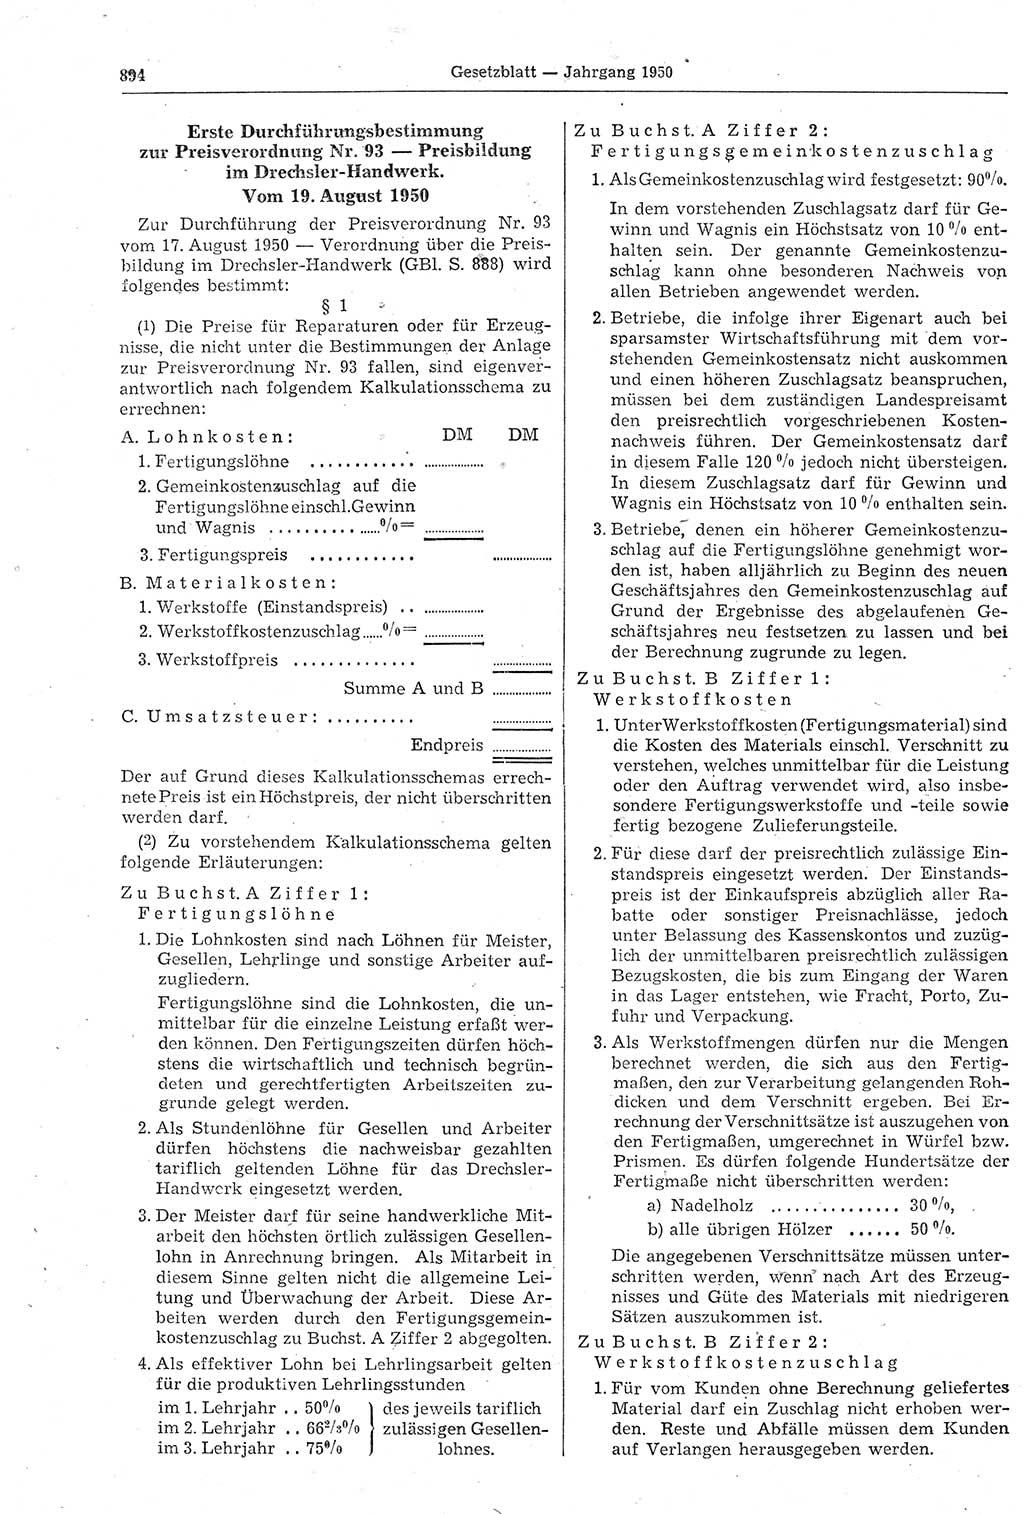 Gesetzblatt (GBl.) der Deutschen Demokratischen Republik (DDR) 1950, Seite 894 (GBl. DDR 1950, S. 894)